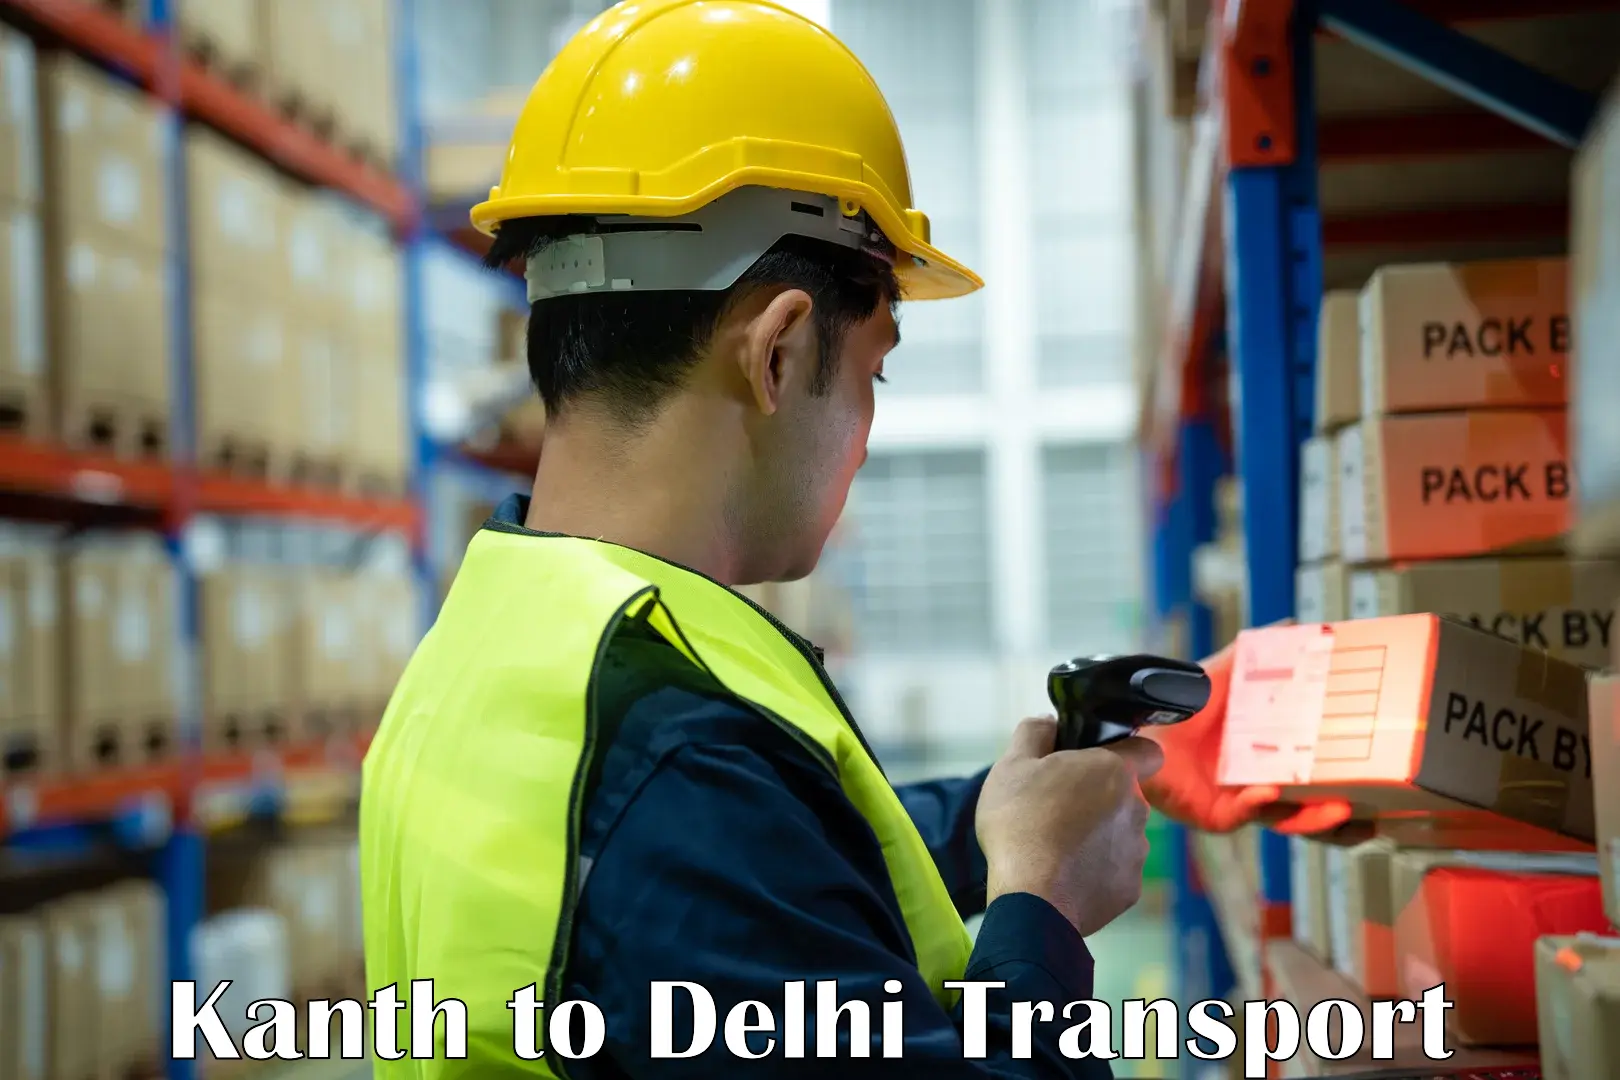 Transportation services Kanth to NIT Delhi